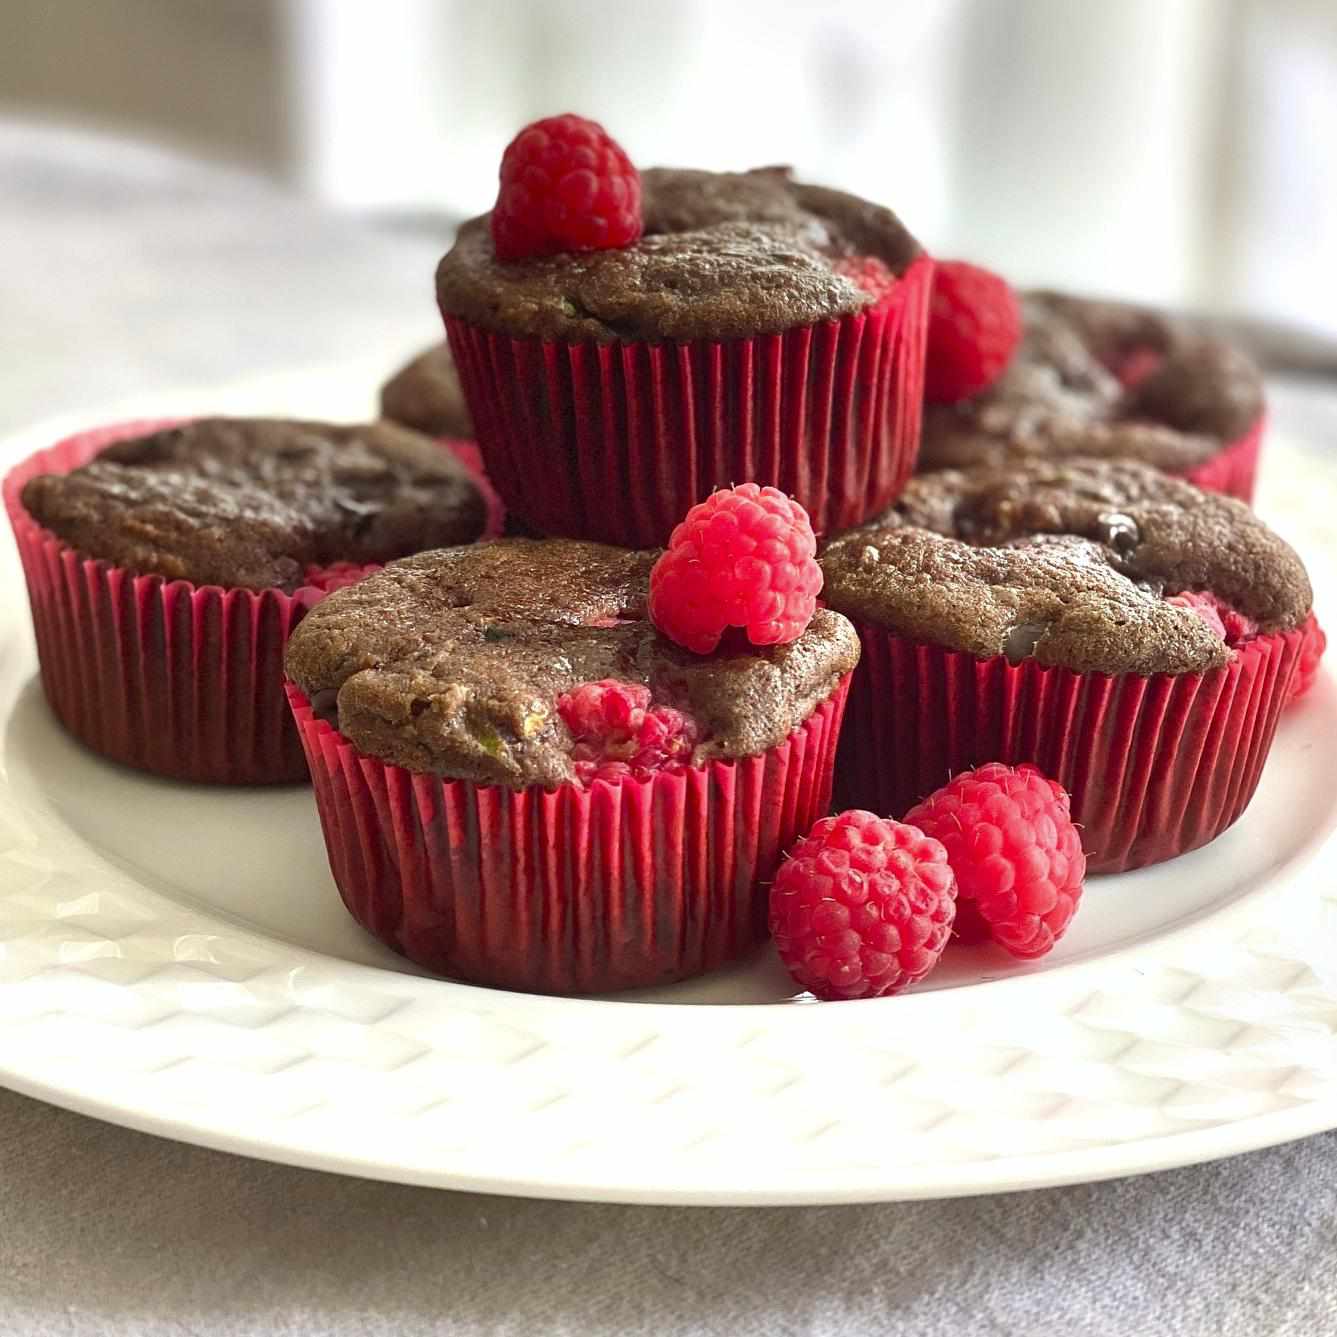 Platter of chocolate zucchini cupcakes with fresh raspberries